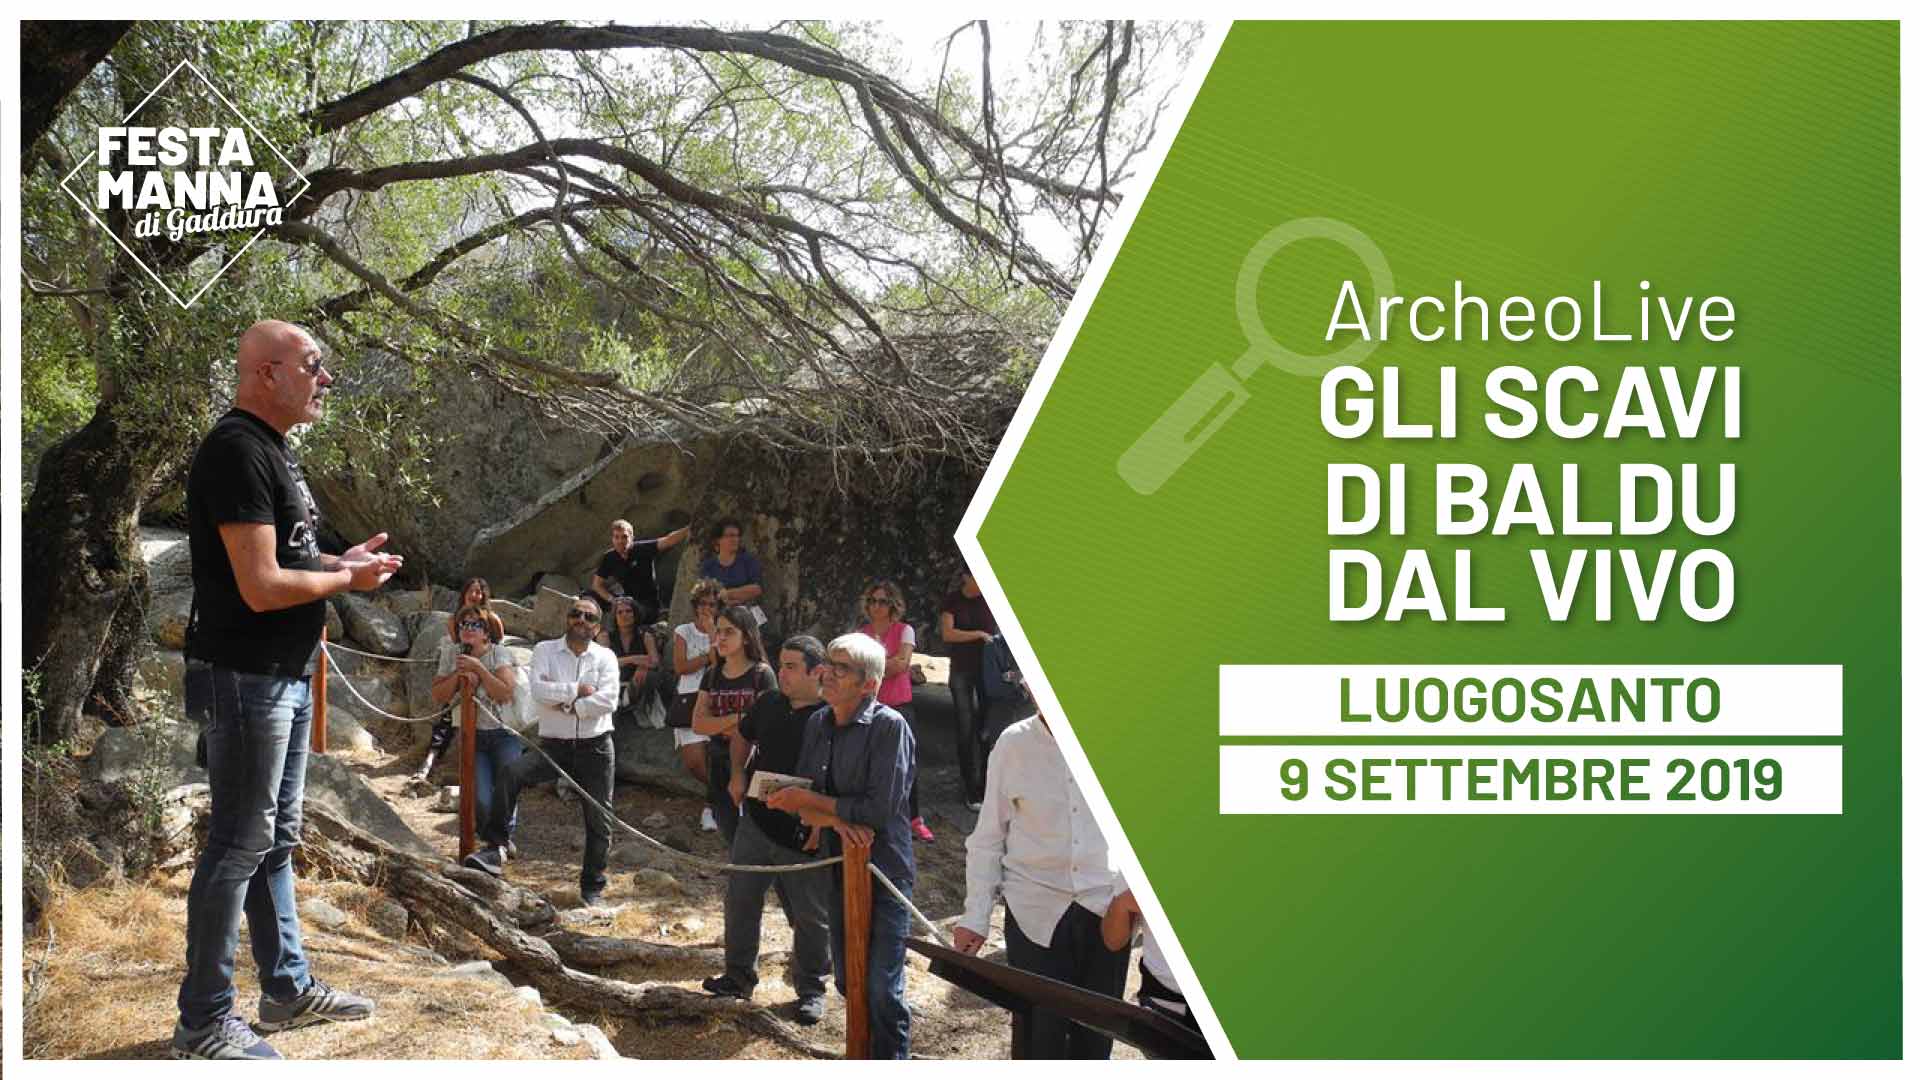 ArcheoLive. Visita guidata allo scavo archeologico del Palazzo di Baldu | Festa Manna di Gaddura 2019